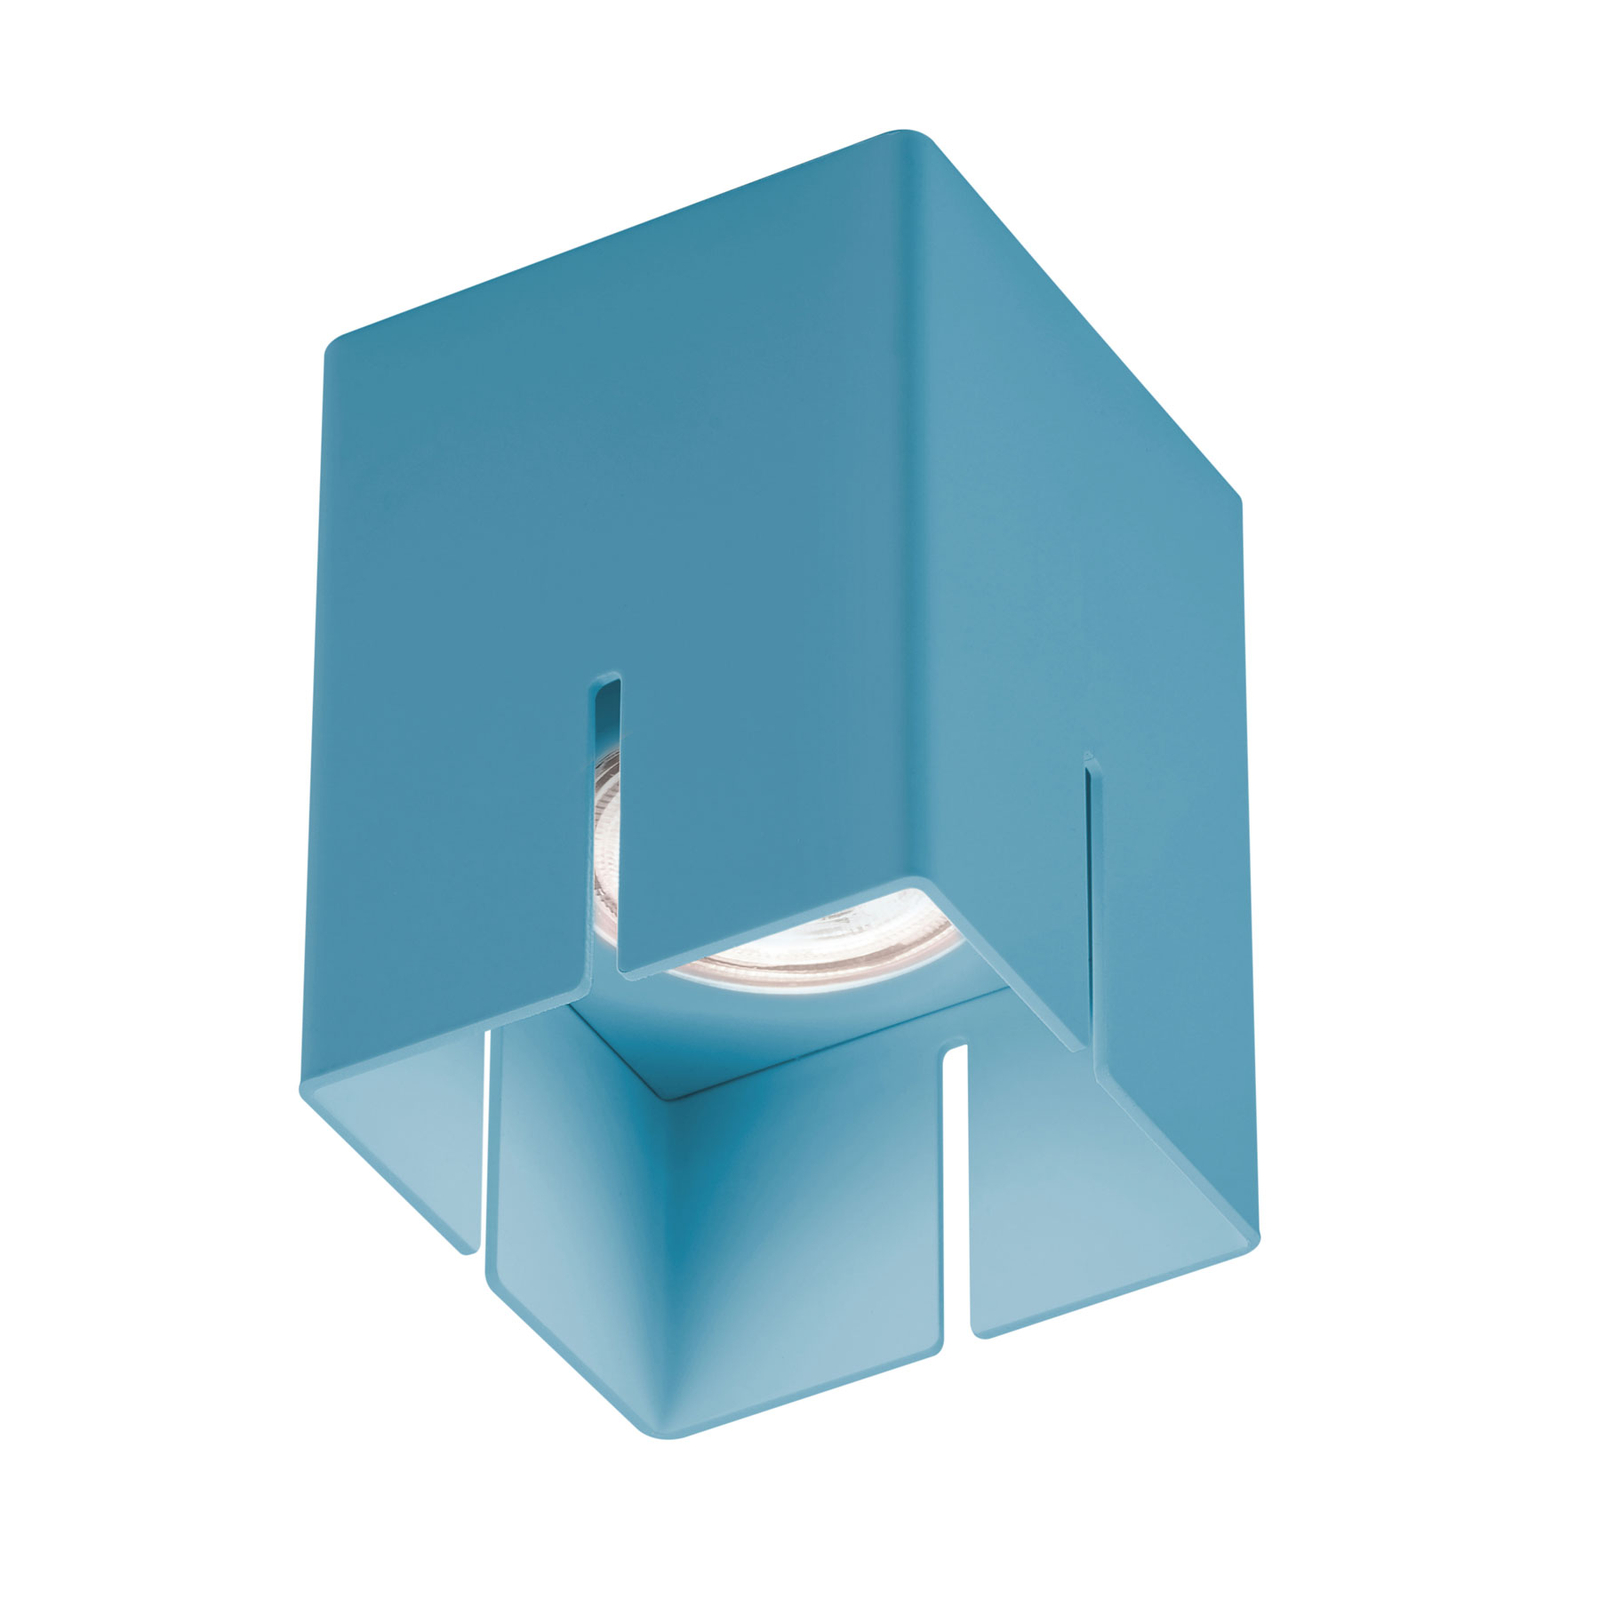 Stropna svetilka Baulmann 83.200, modra, višina 10 cm